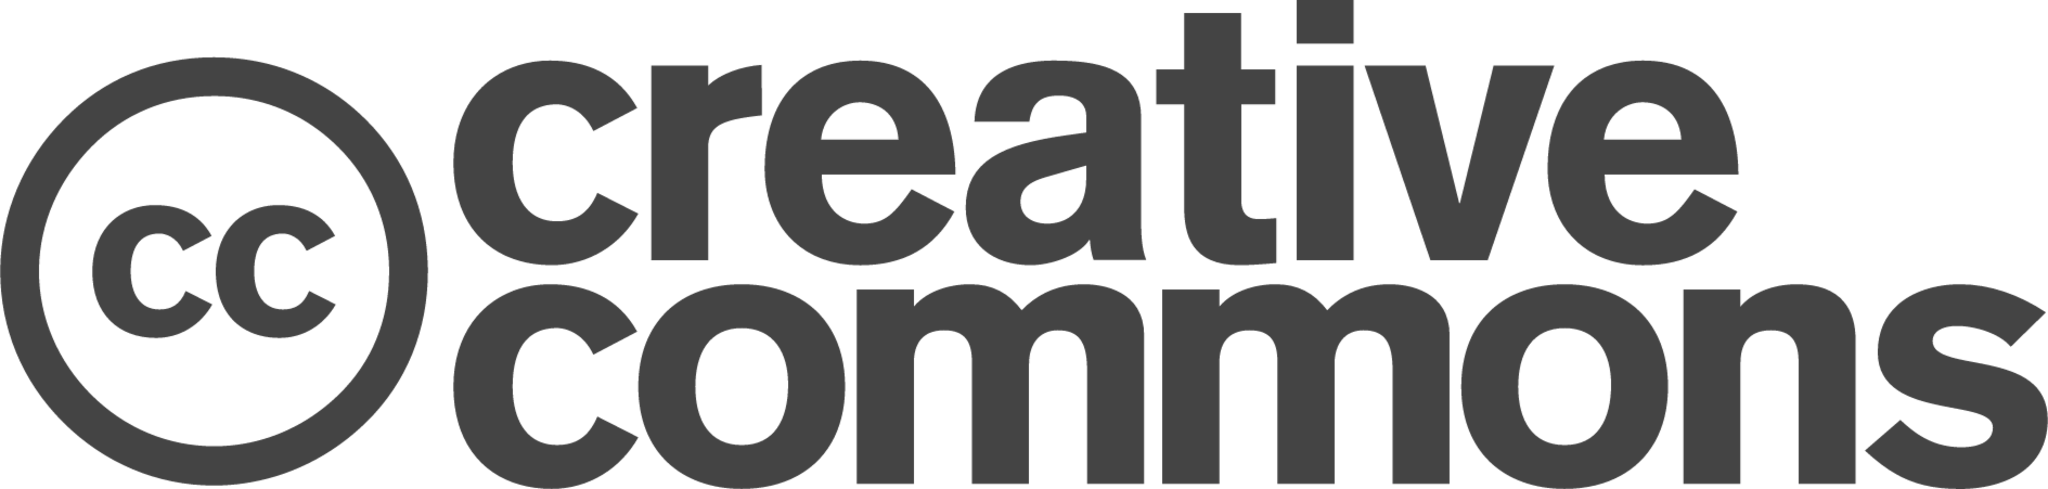 creativecommons badge icon